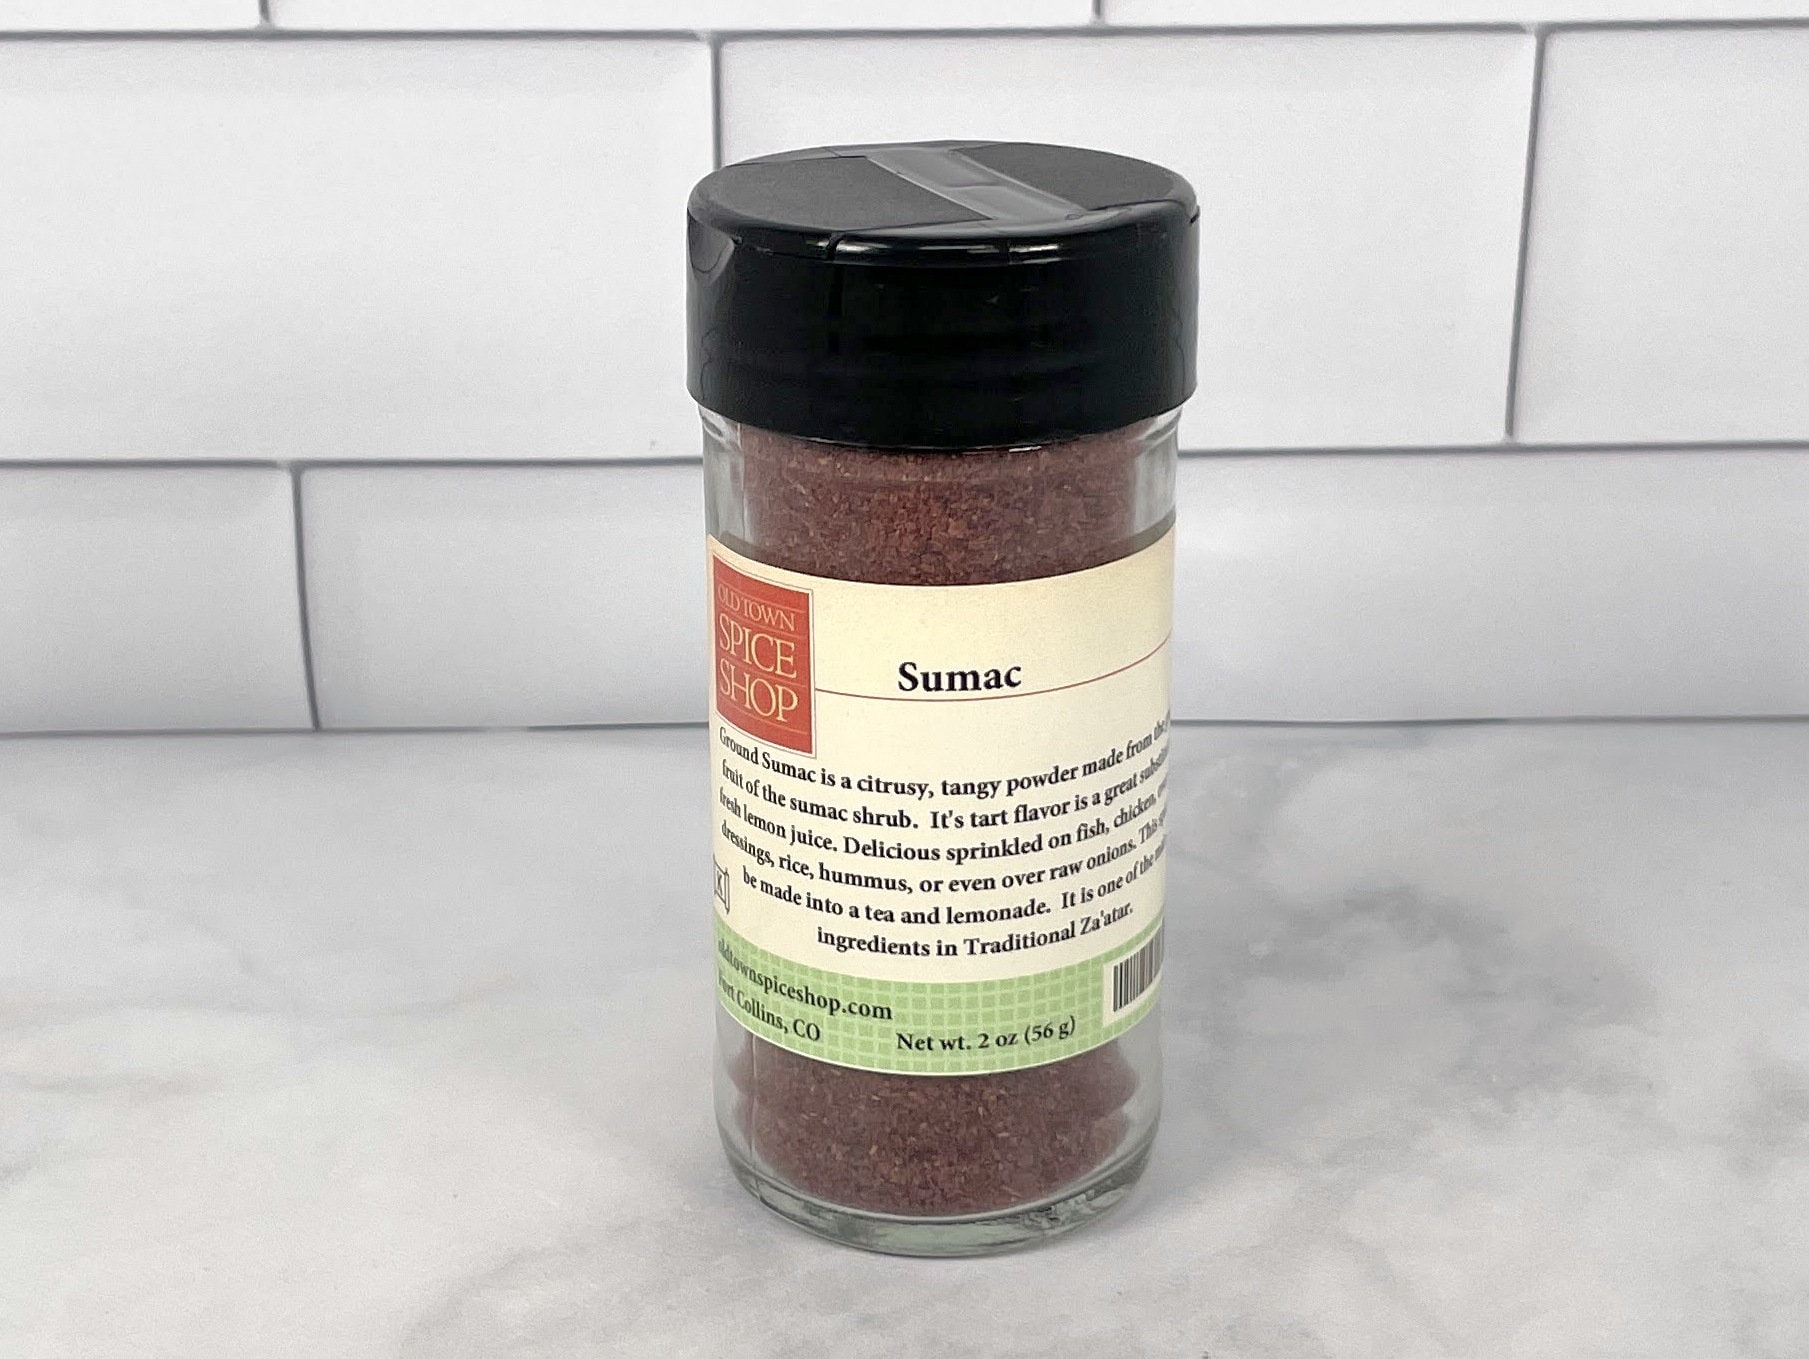 Sumac: A Uniquely Versatile Spice